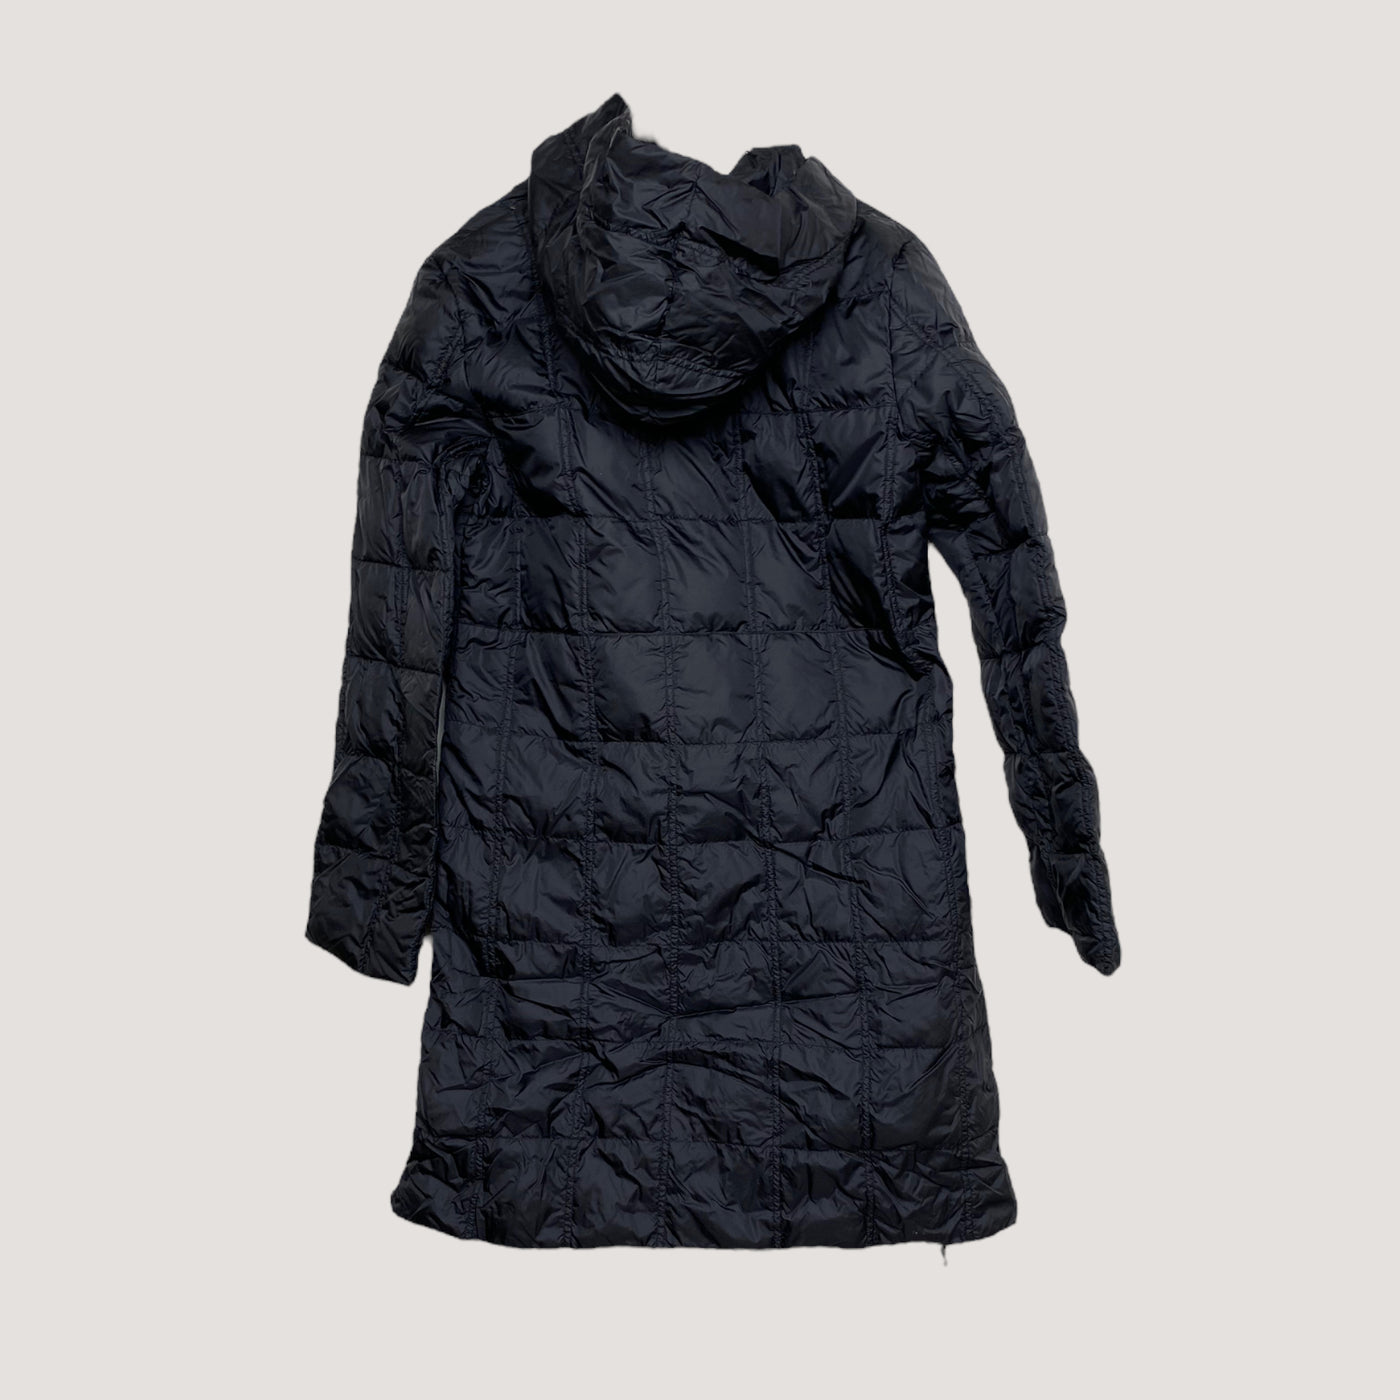 Joutsen marieville jacket, black | woman S